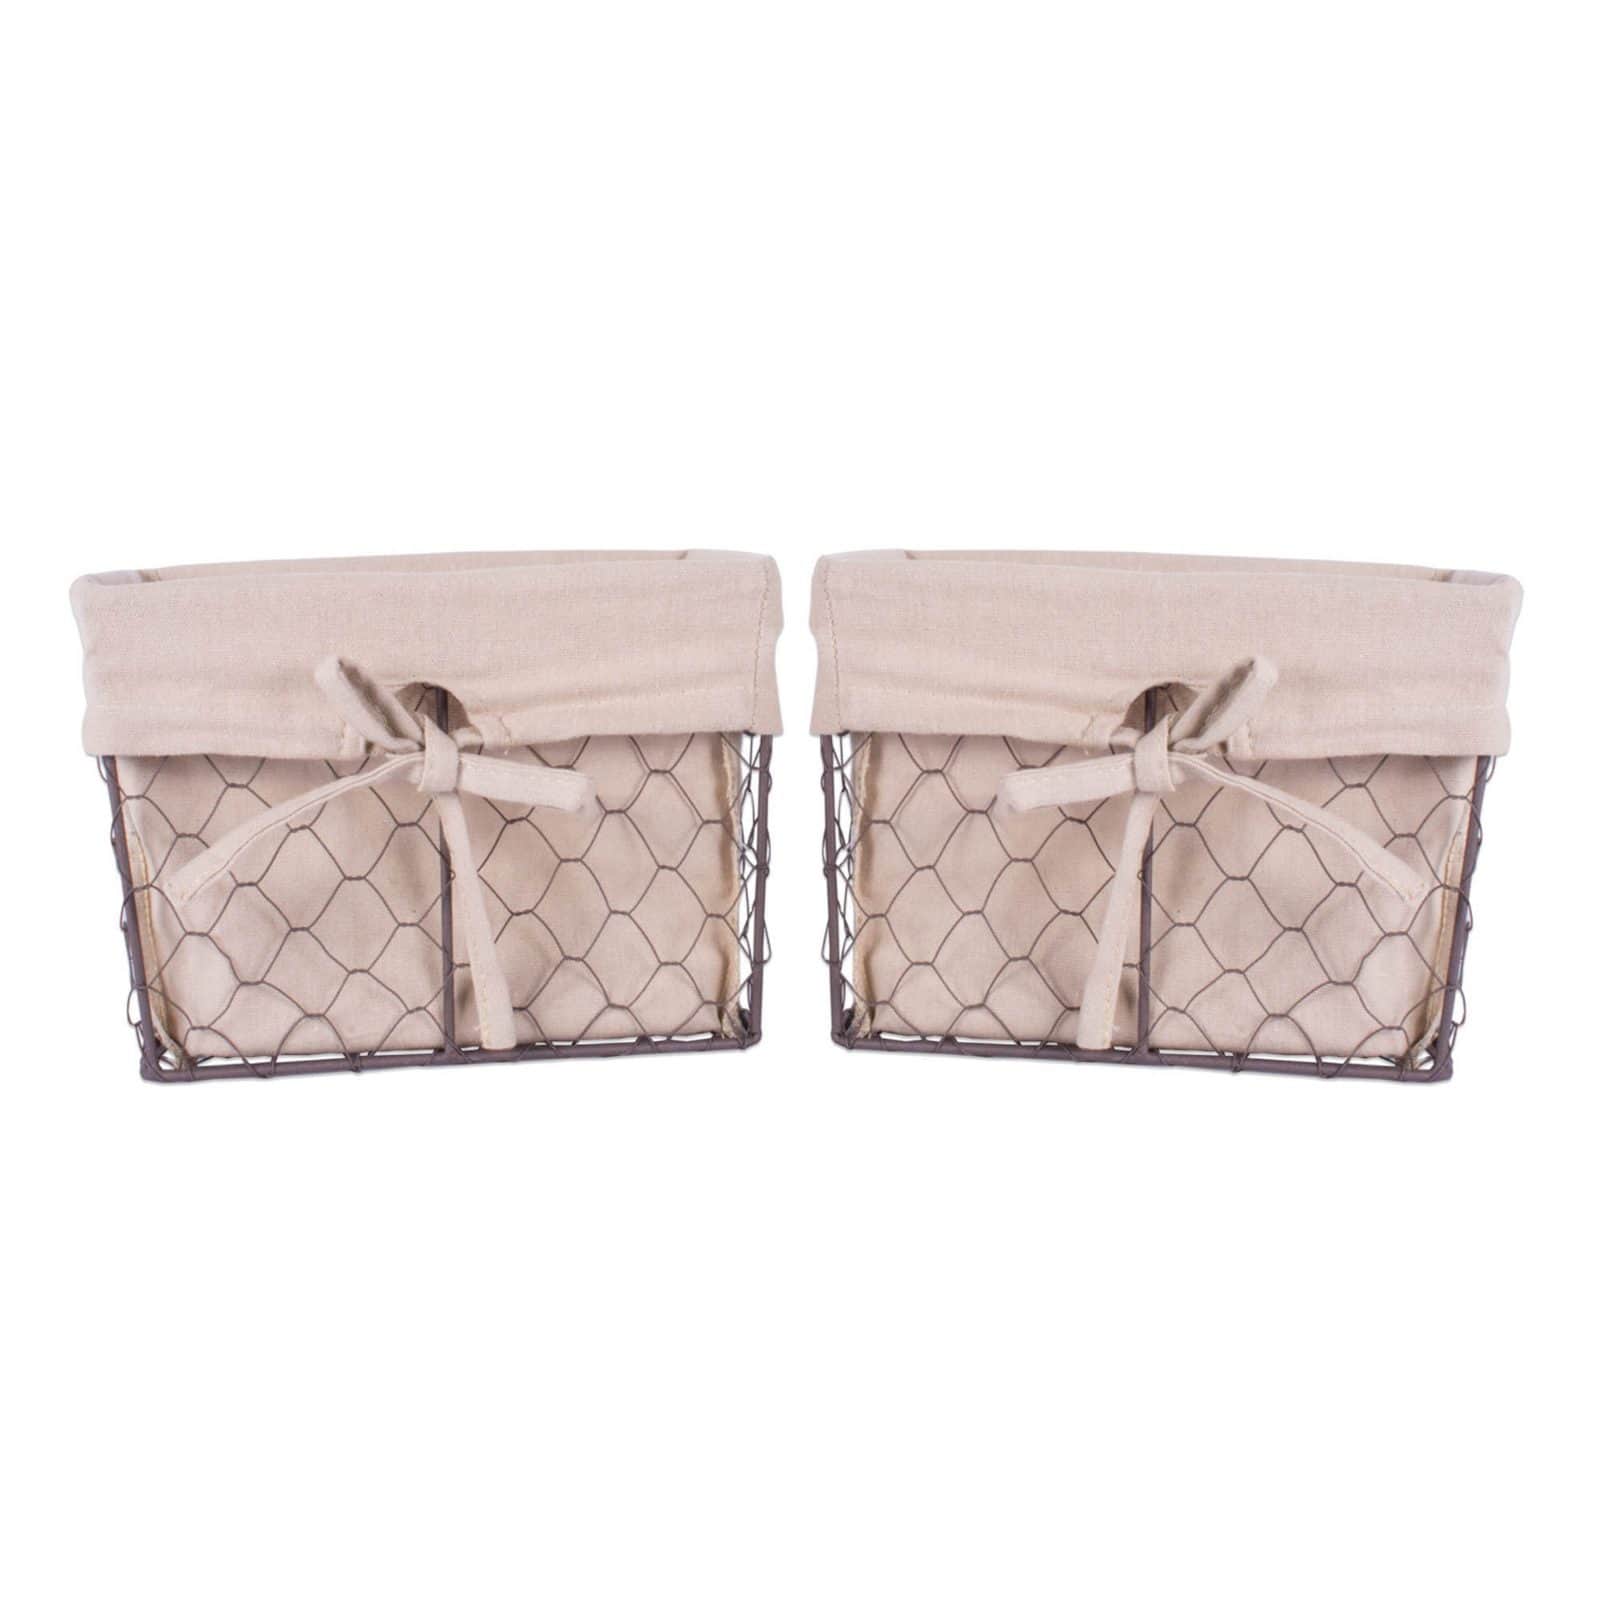 DII® Medium Chicken Wire Baskets, 2ct.